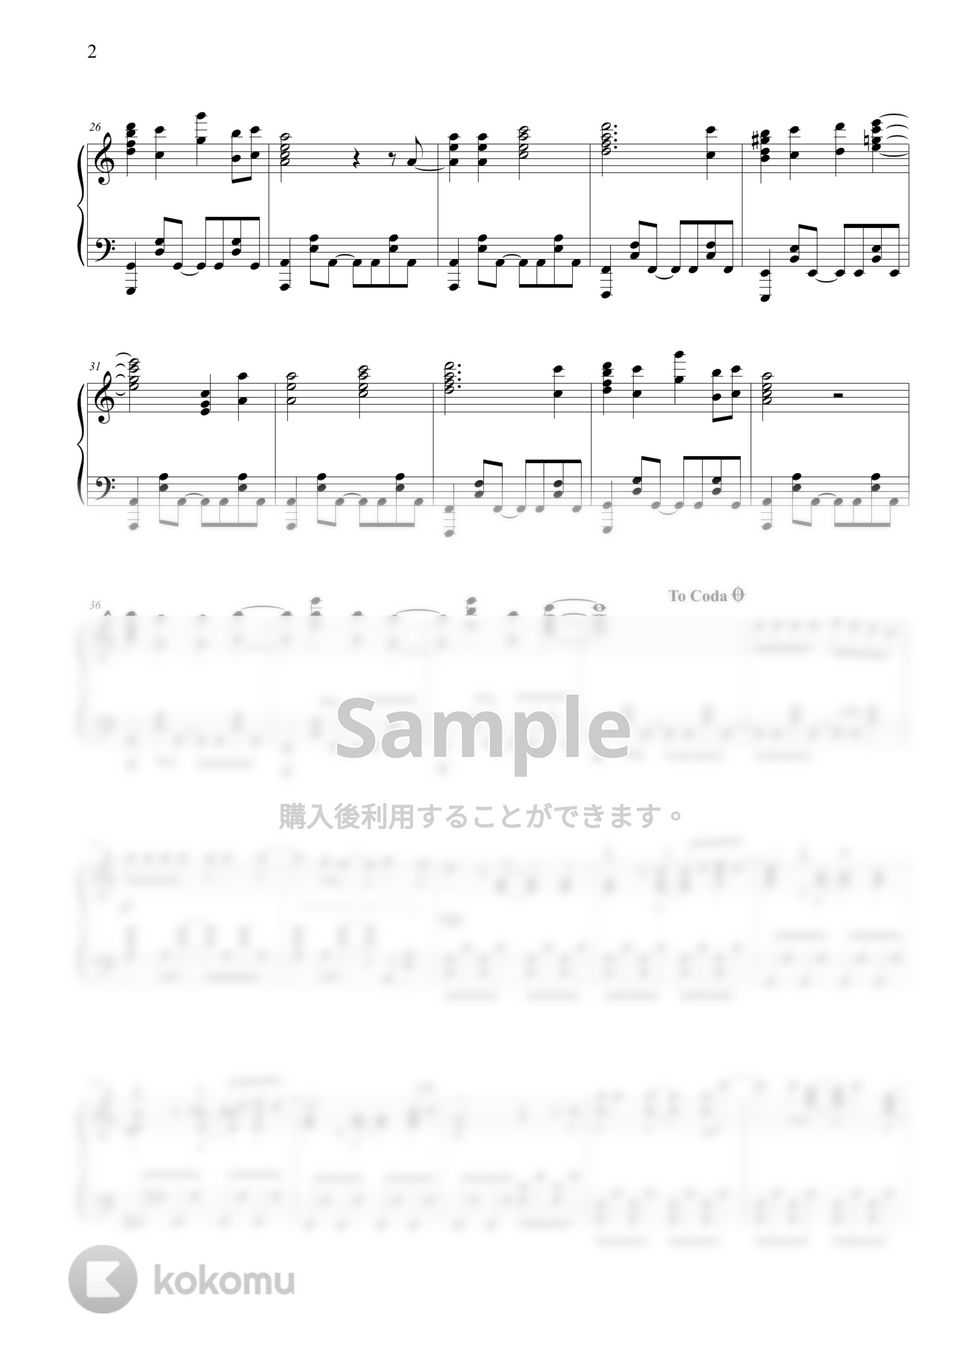 王様ランキング - 裸の勇者 (2期OP) by THIS IS PIANO